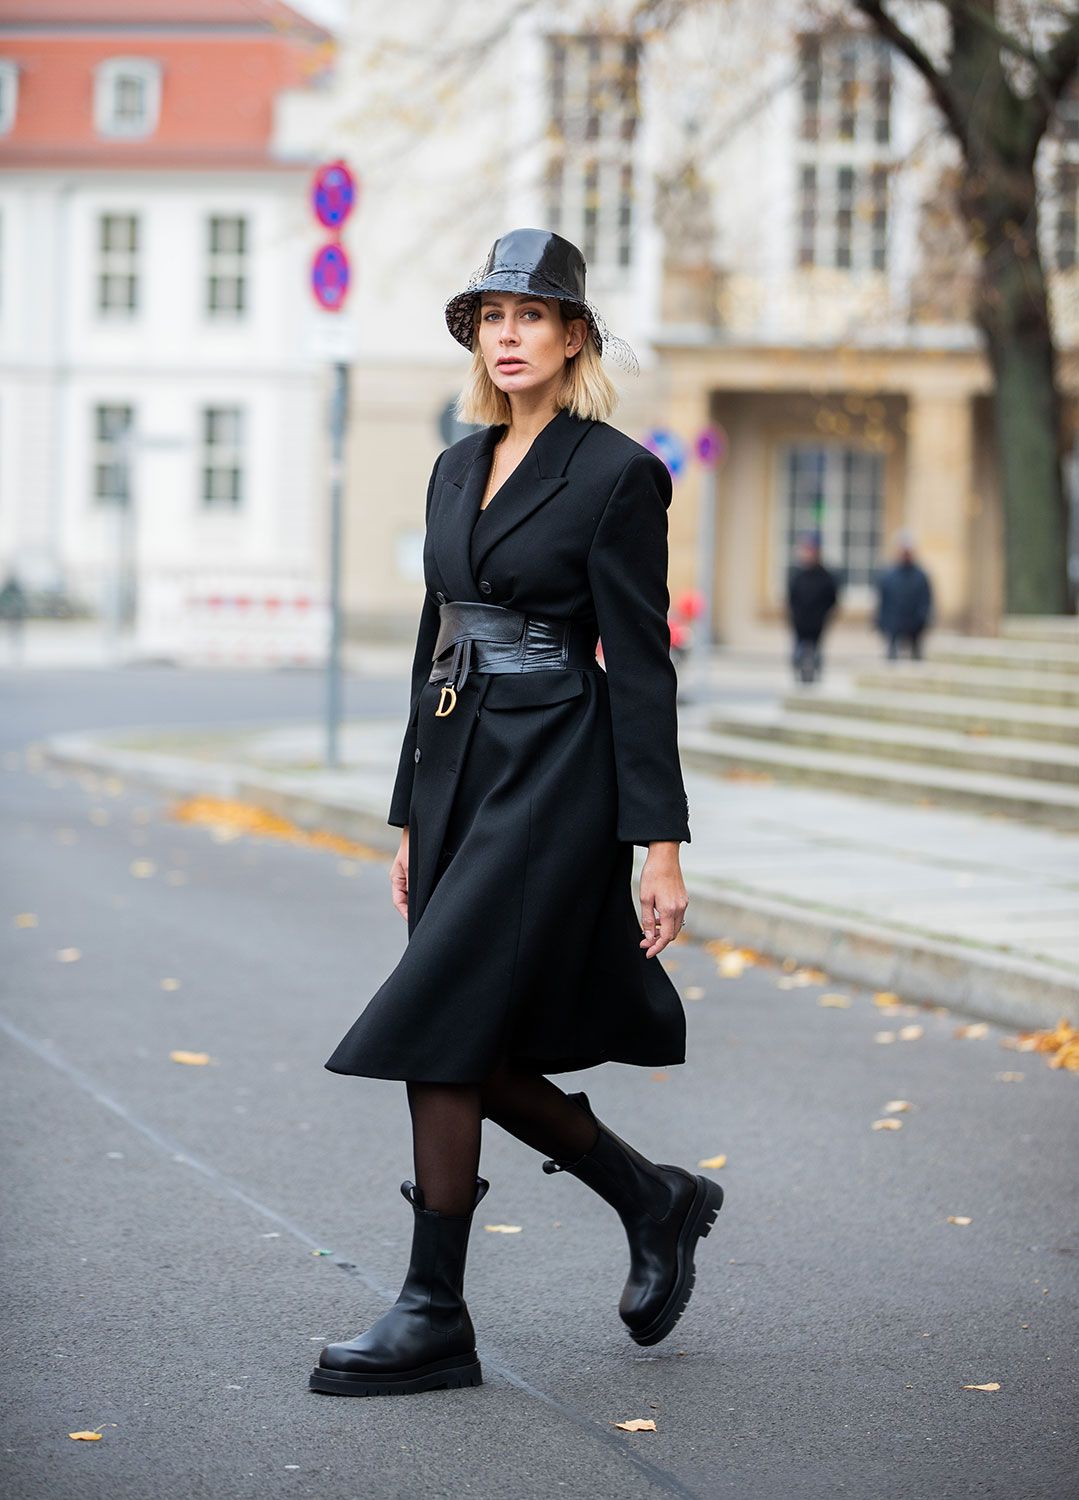 Cappotto inverno 2020, questo nero di Zara è moda versatile